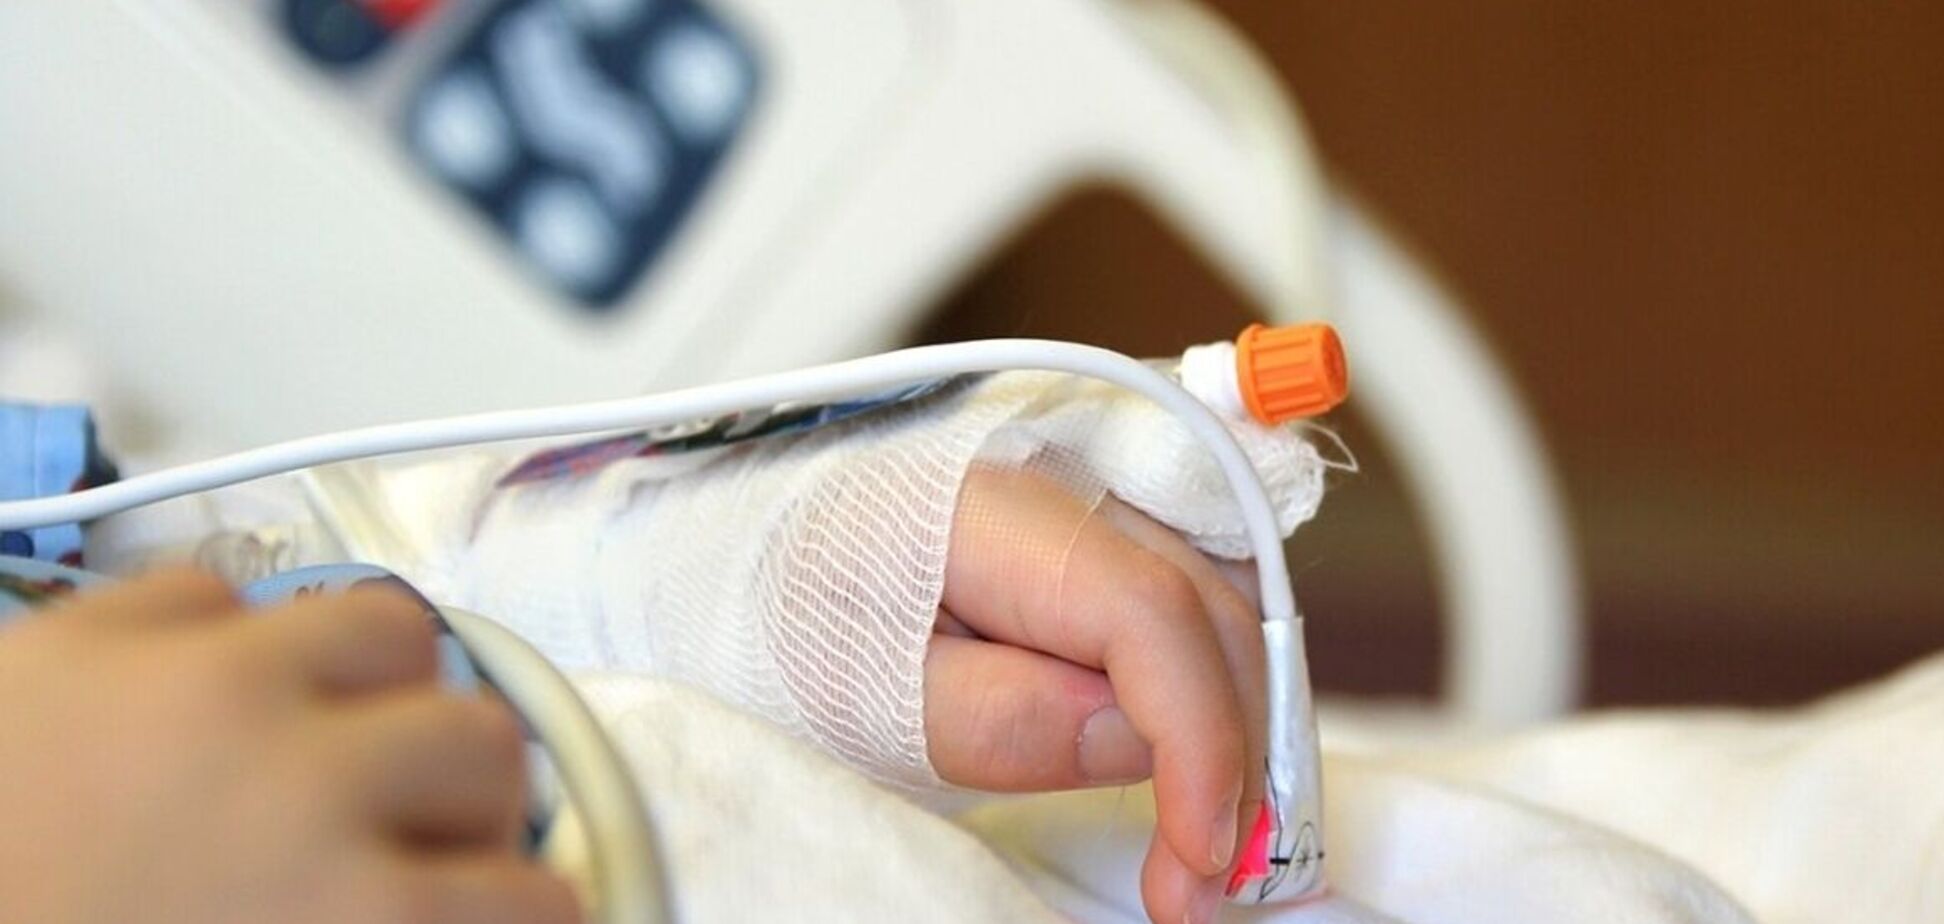 В Мариуполе умерла 2-летняя девочка, которую госпитализировали с синяками: всплыла правда о заболевании